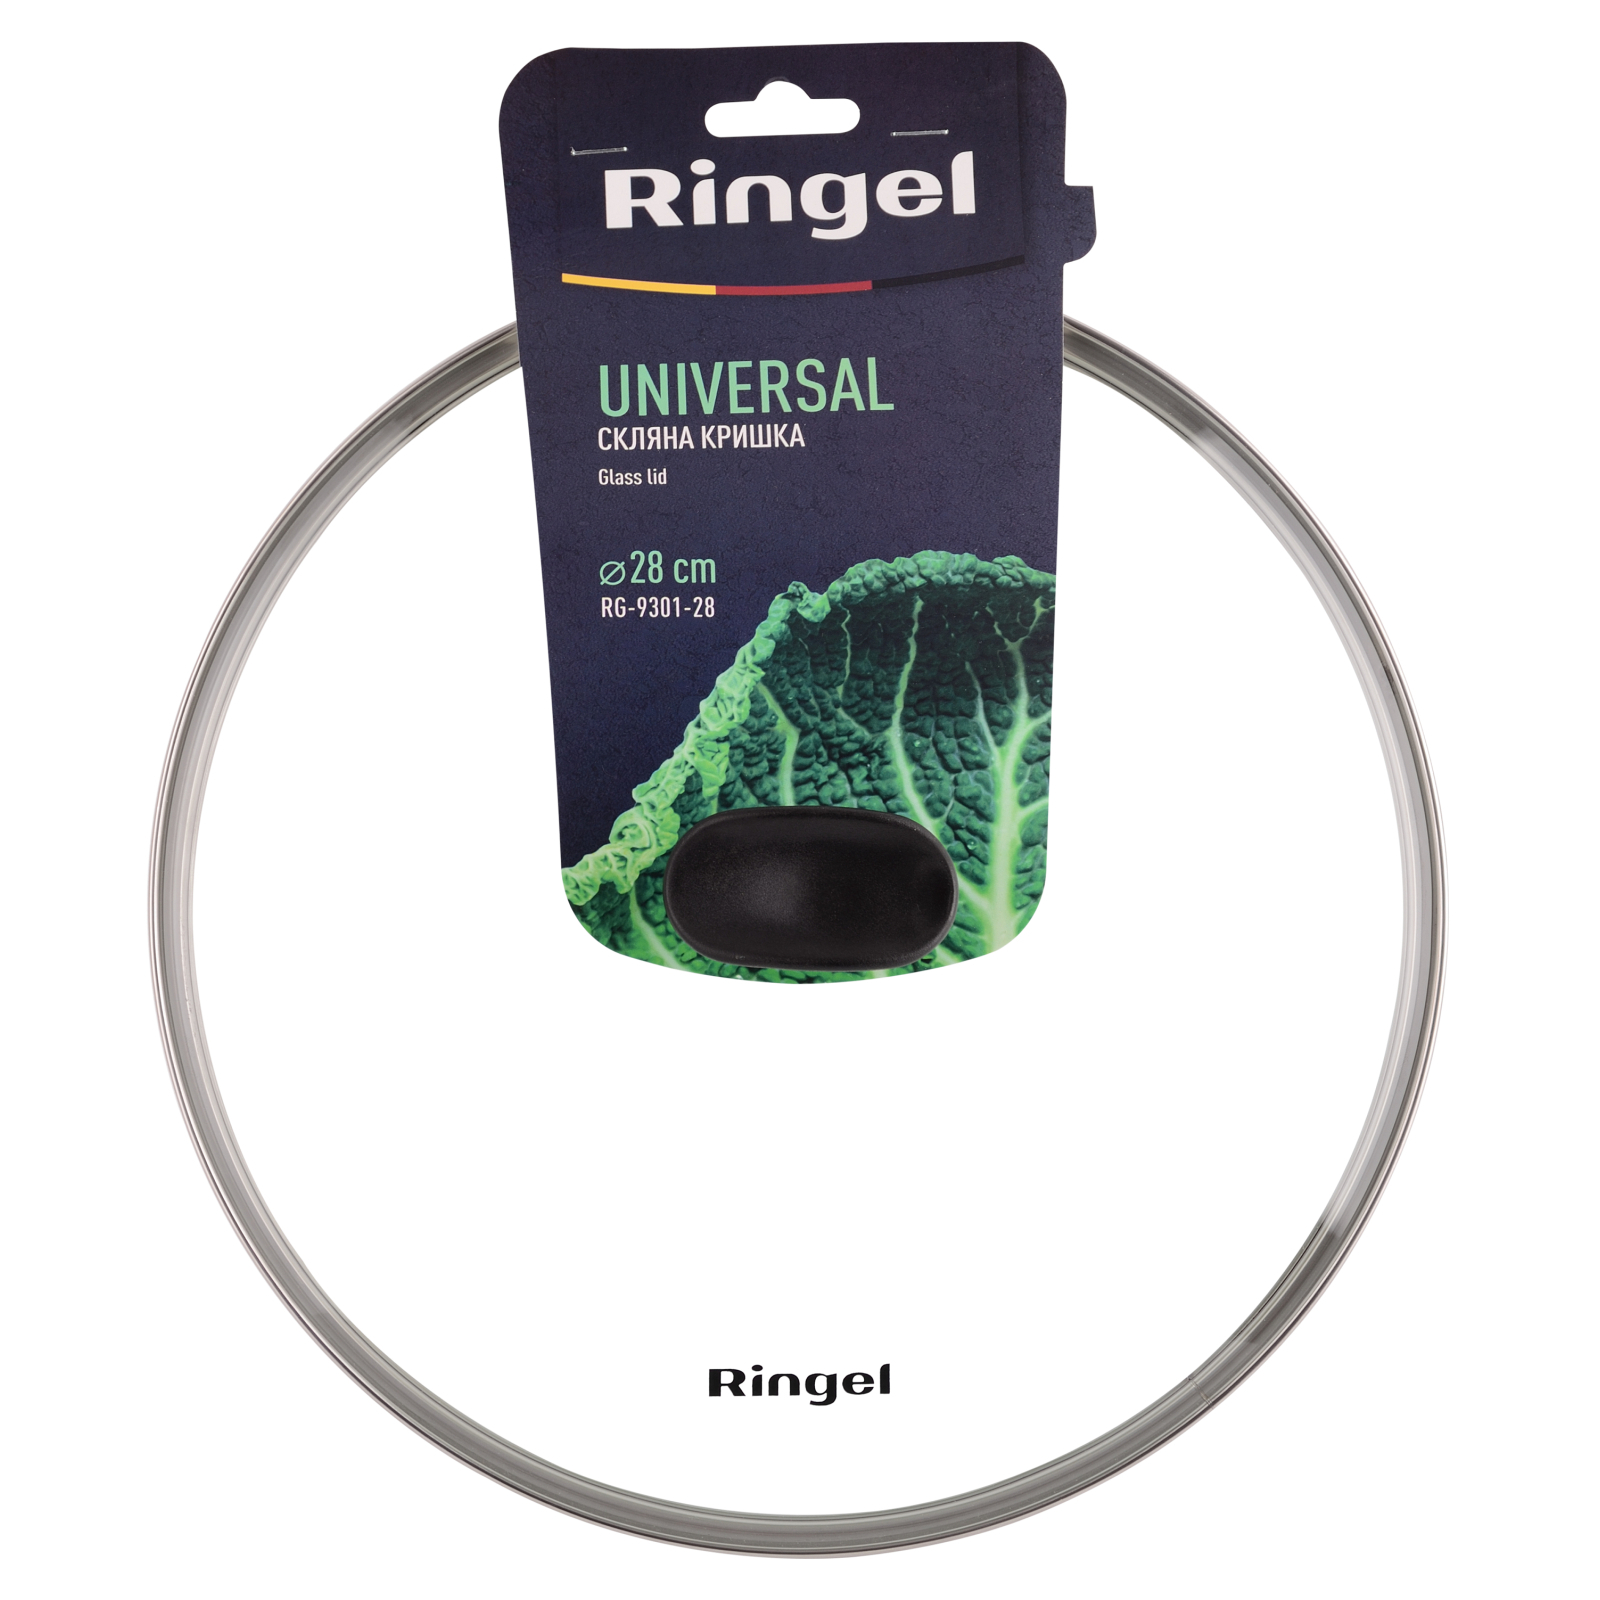 Крышка для посуды Ringel Universal 22 см (RG-9301-22) изображение 4